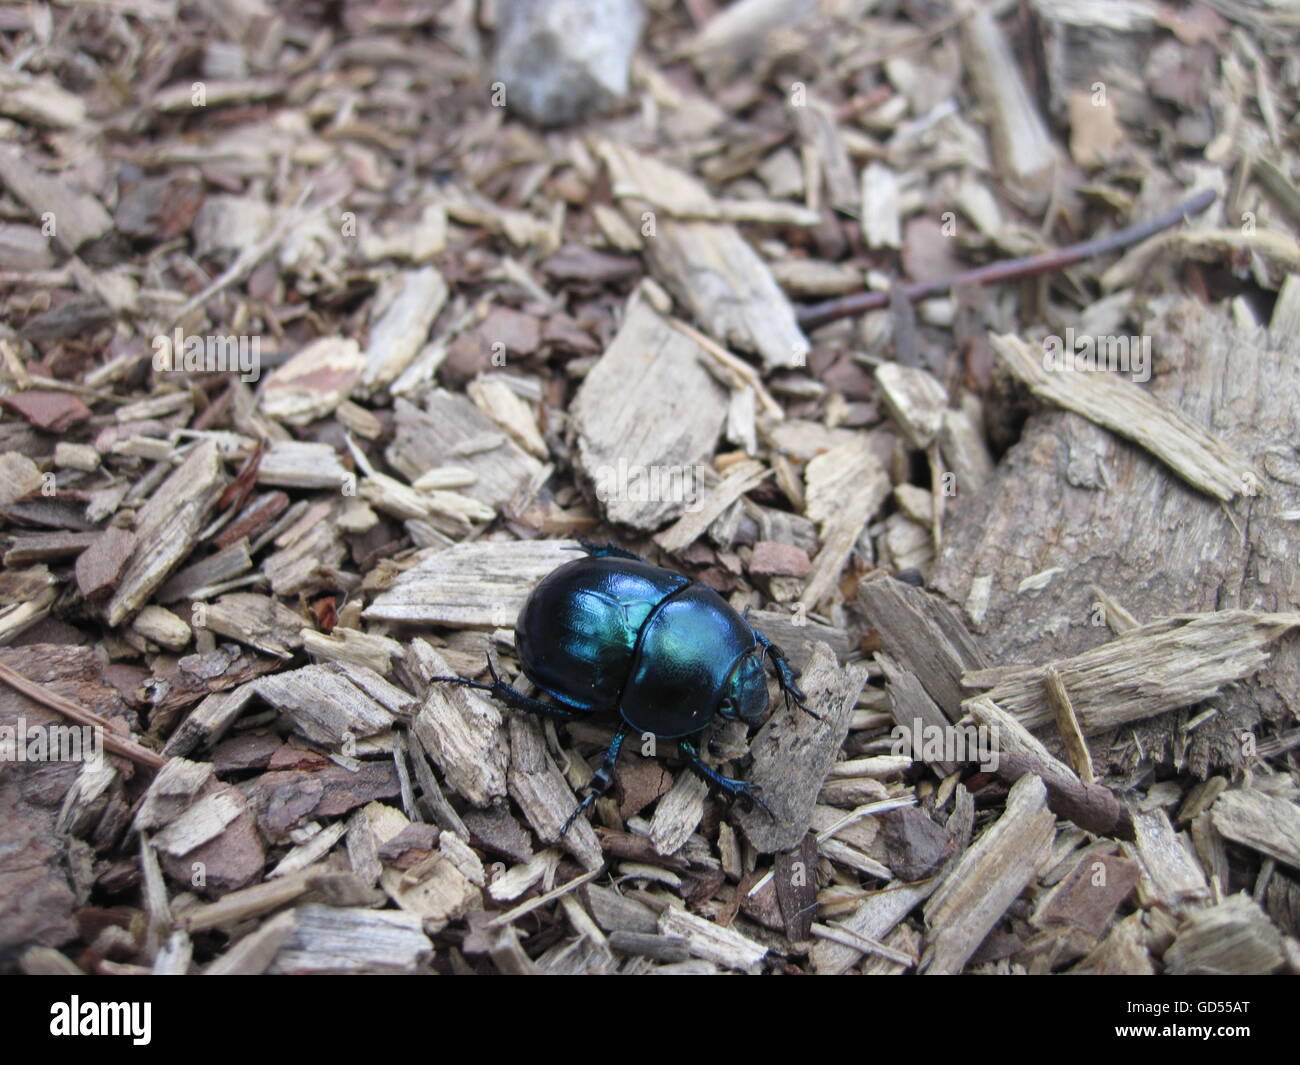 Dor escarabajo sobre el terreno forestal Foto de stock